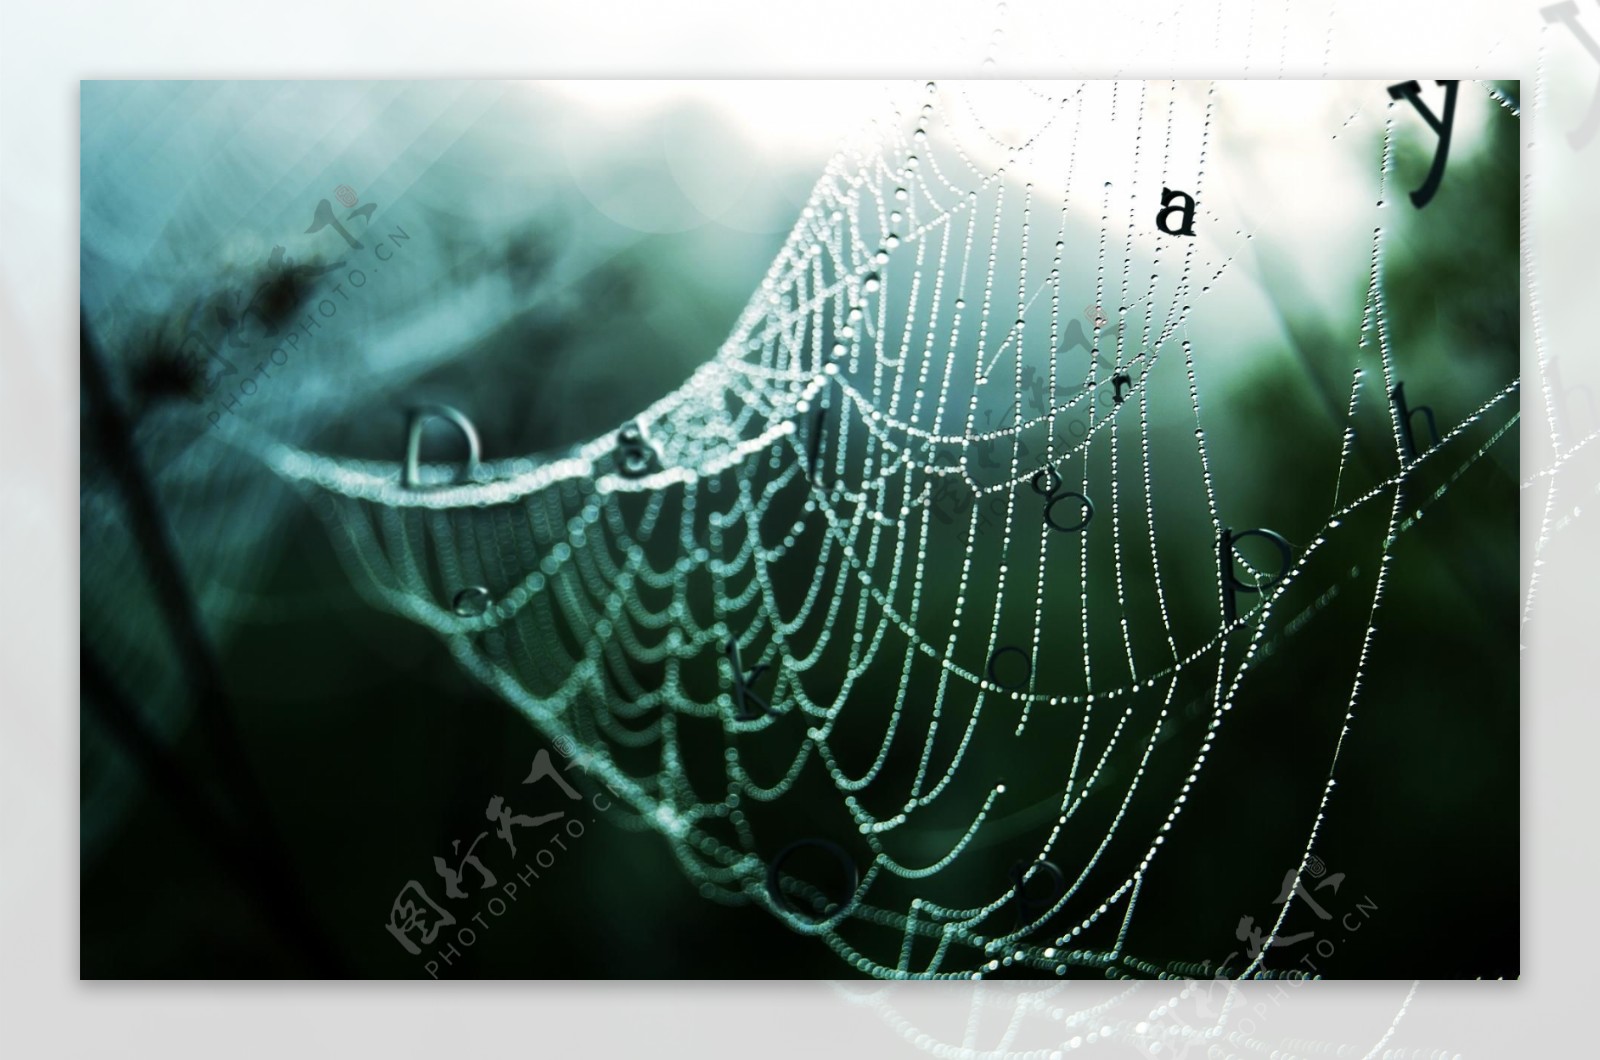 雨后的蜘蛛网图片